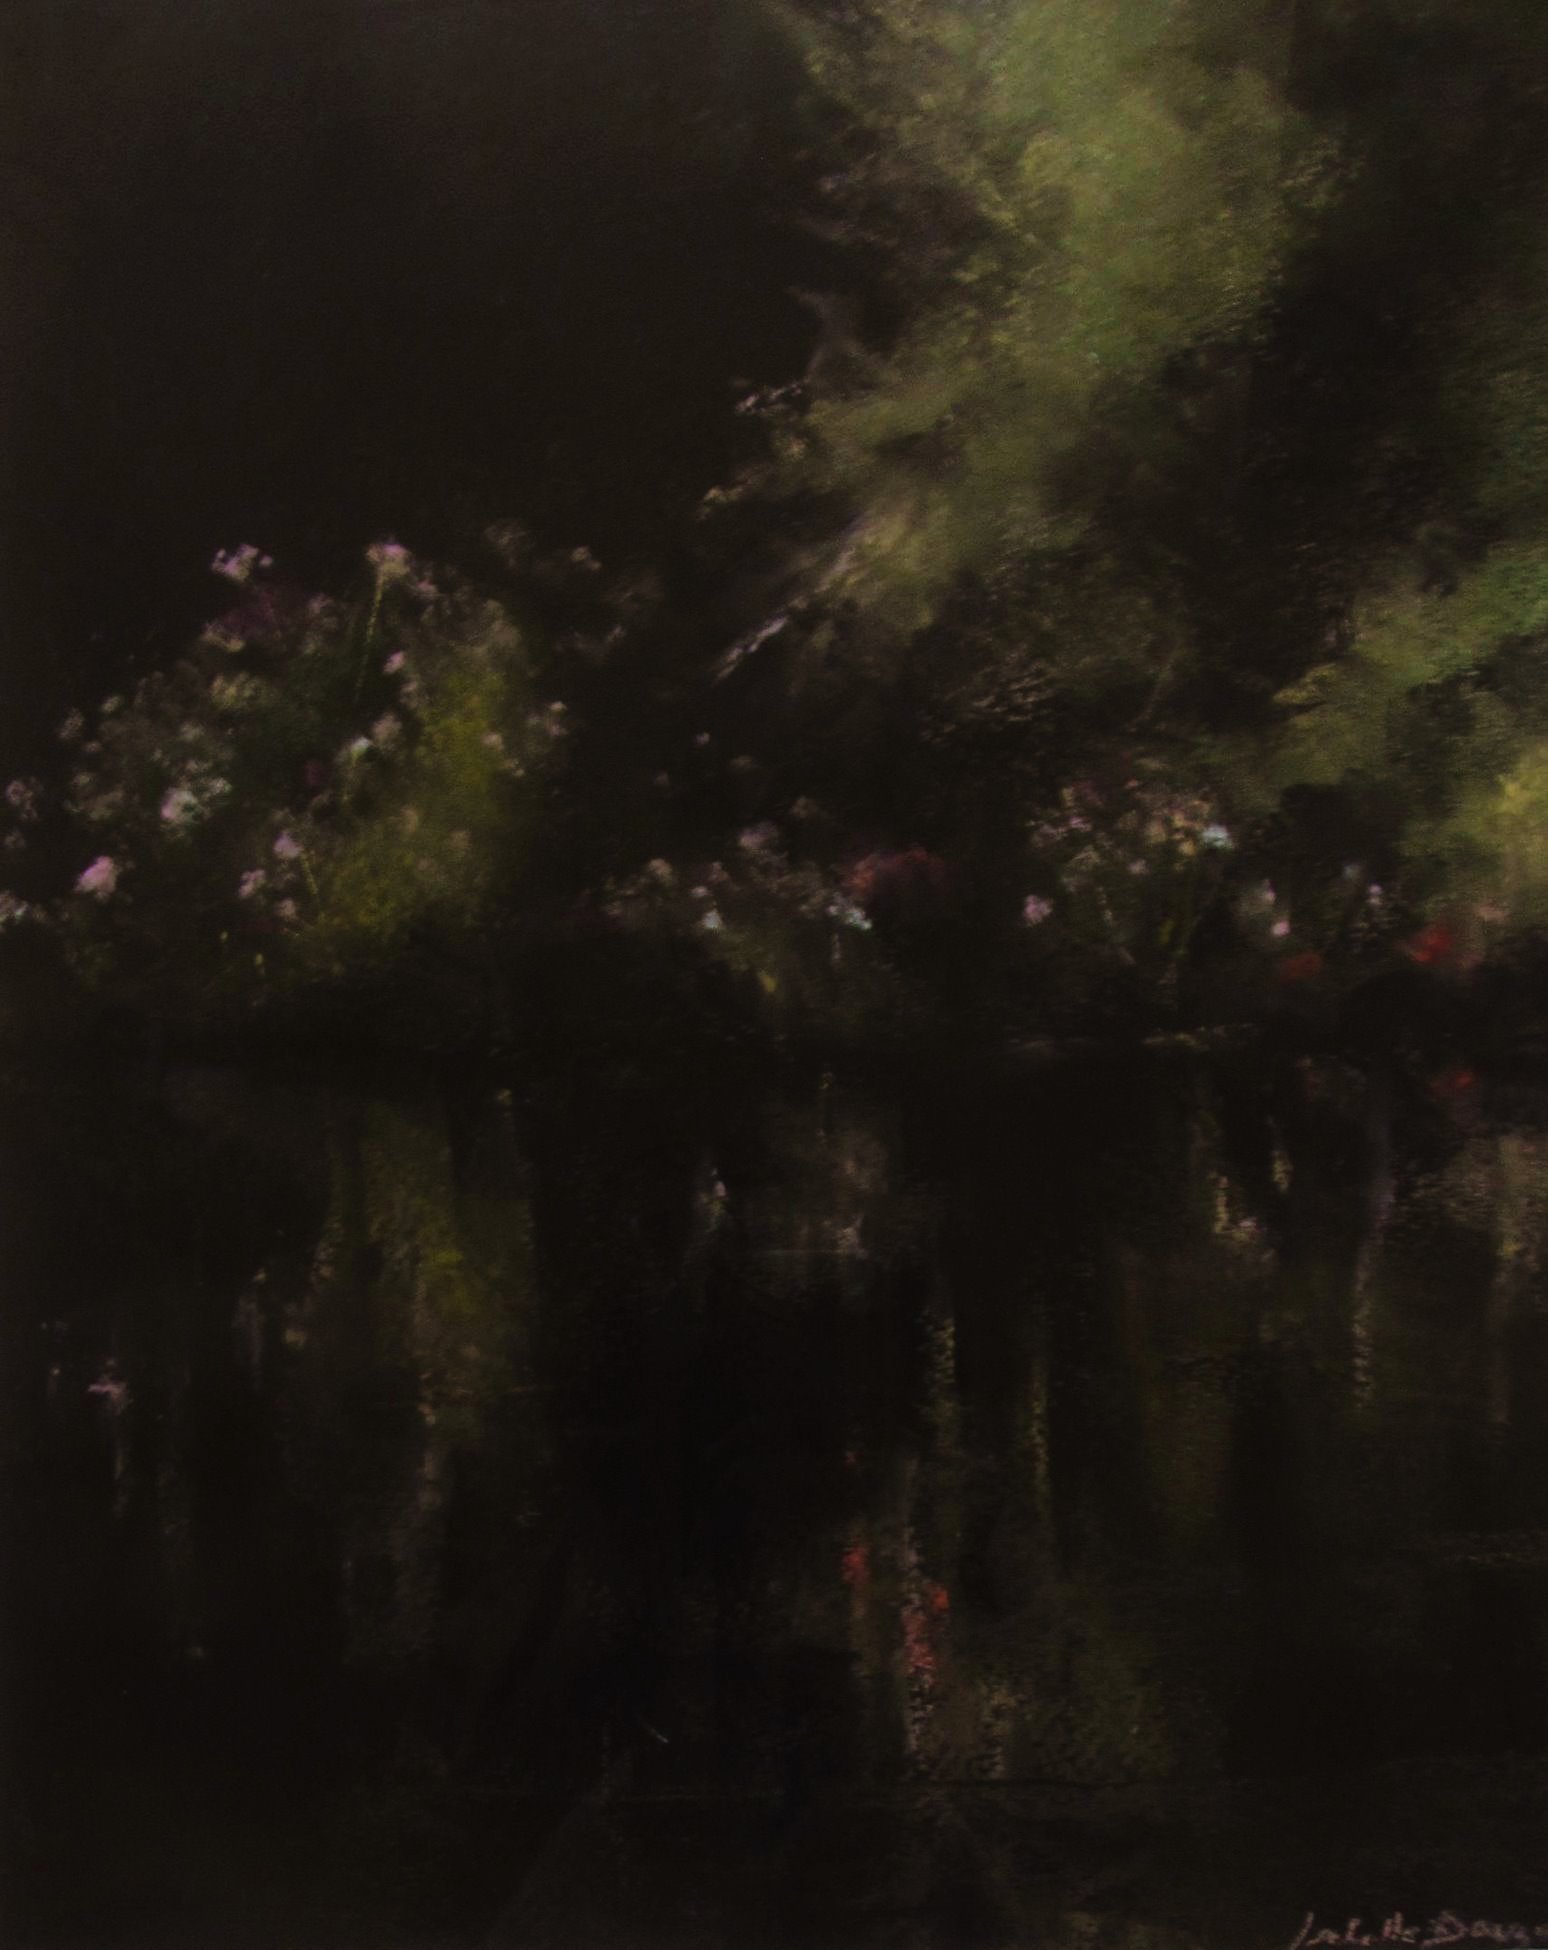 Reflets à l’étang de Guiguen - Peinture au pastel sec par l'artiste peintre Isabelle Douzamy - 45 x 54.5 cm (encadré)